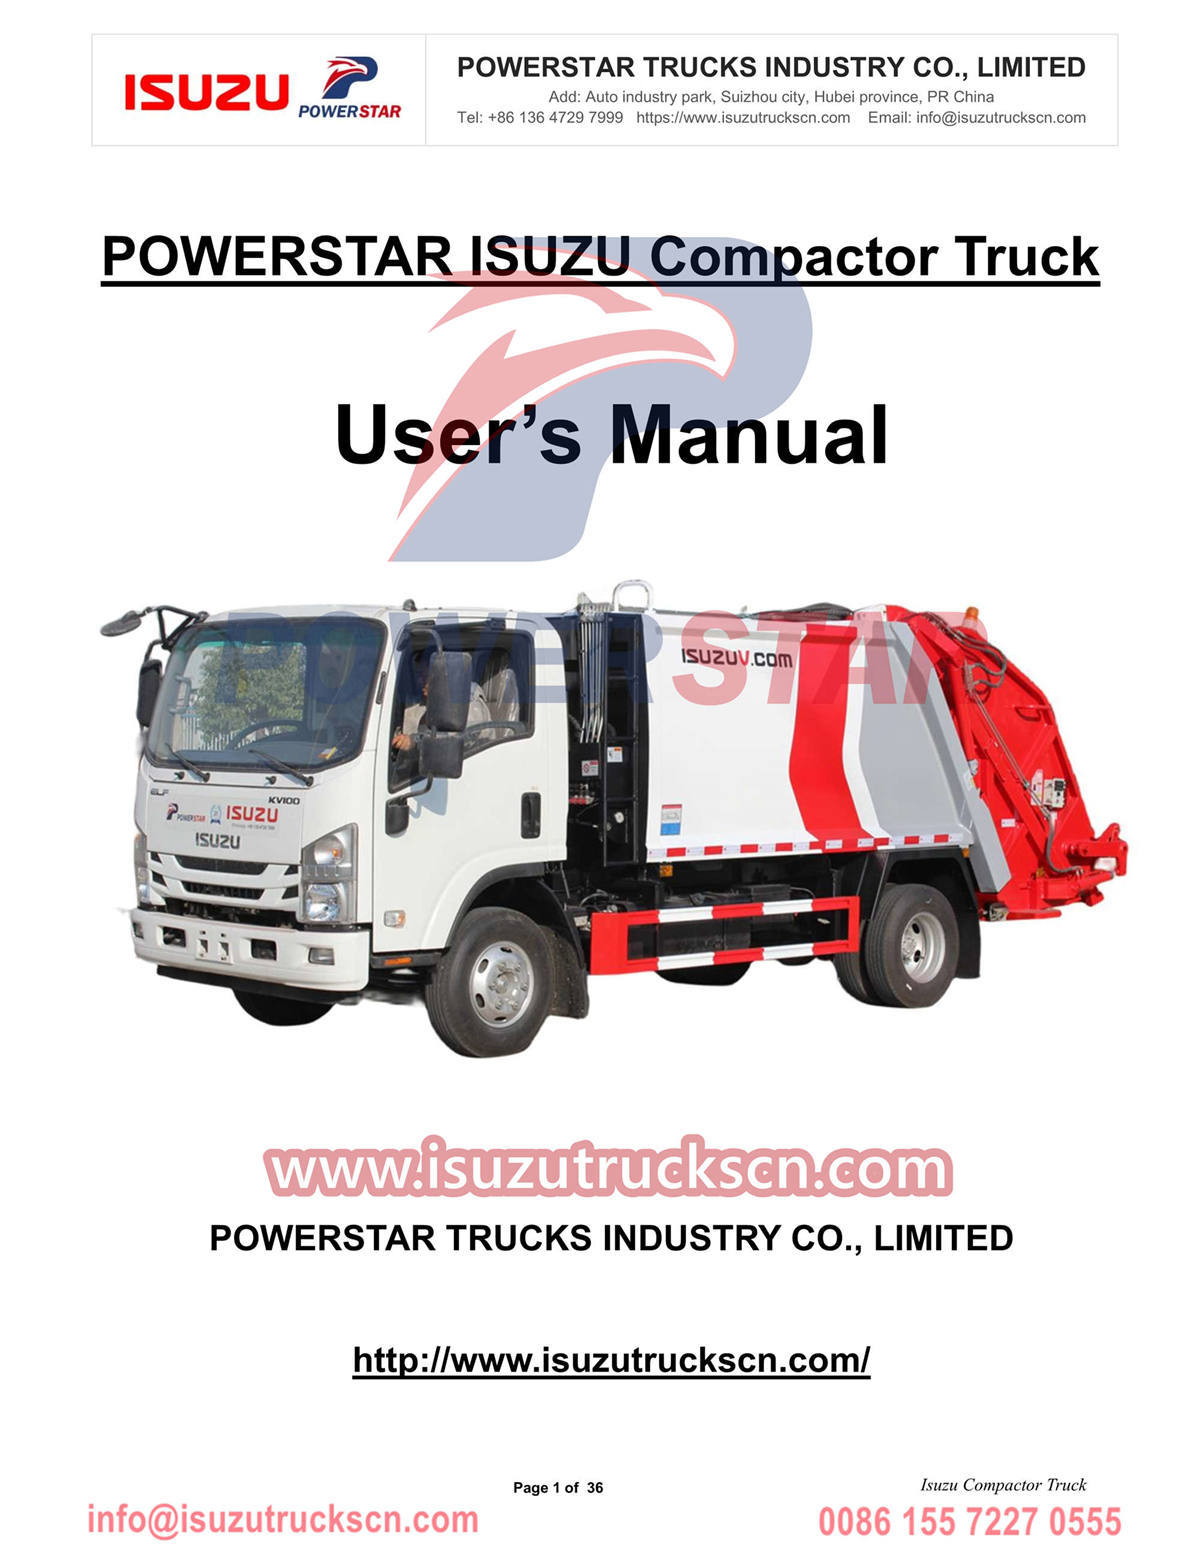 Cliente de Moldavia compra camión compactador POWERSTAR Isuzu 6cbm
    